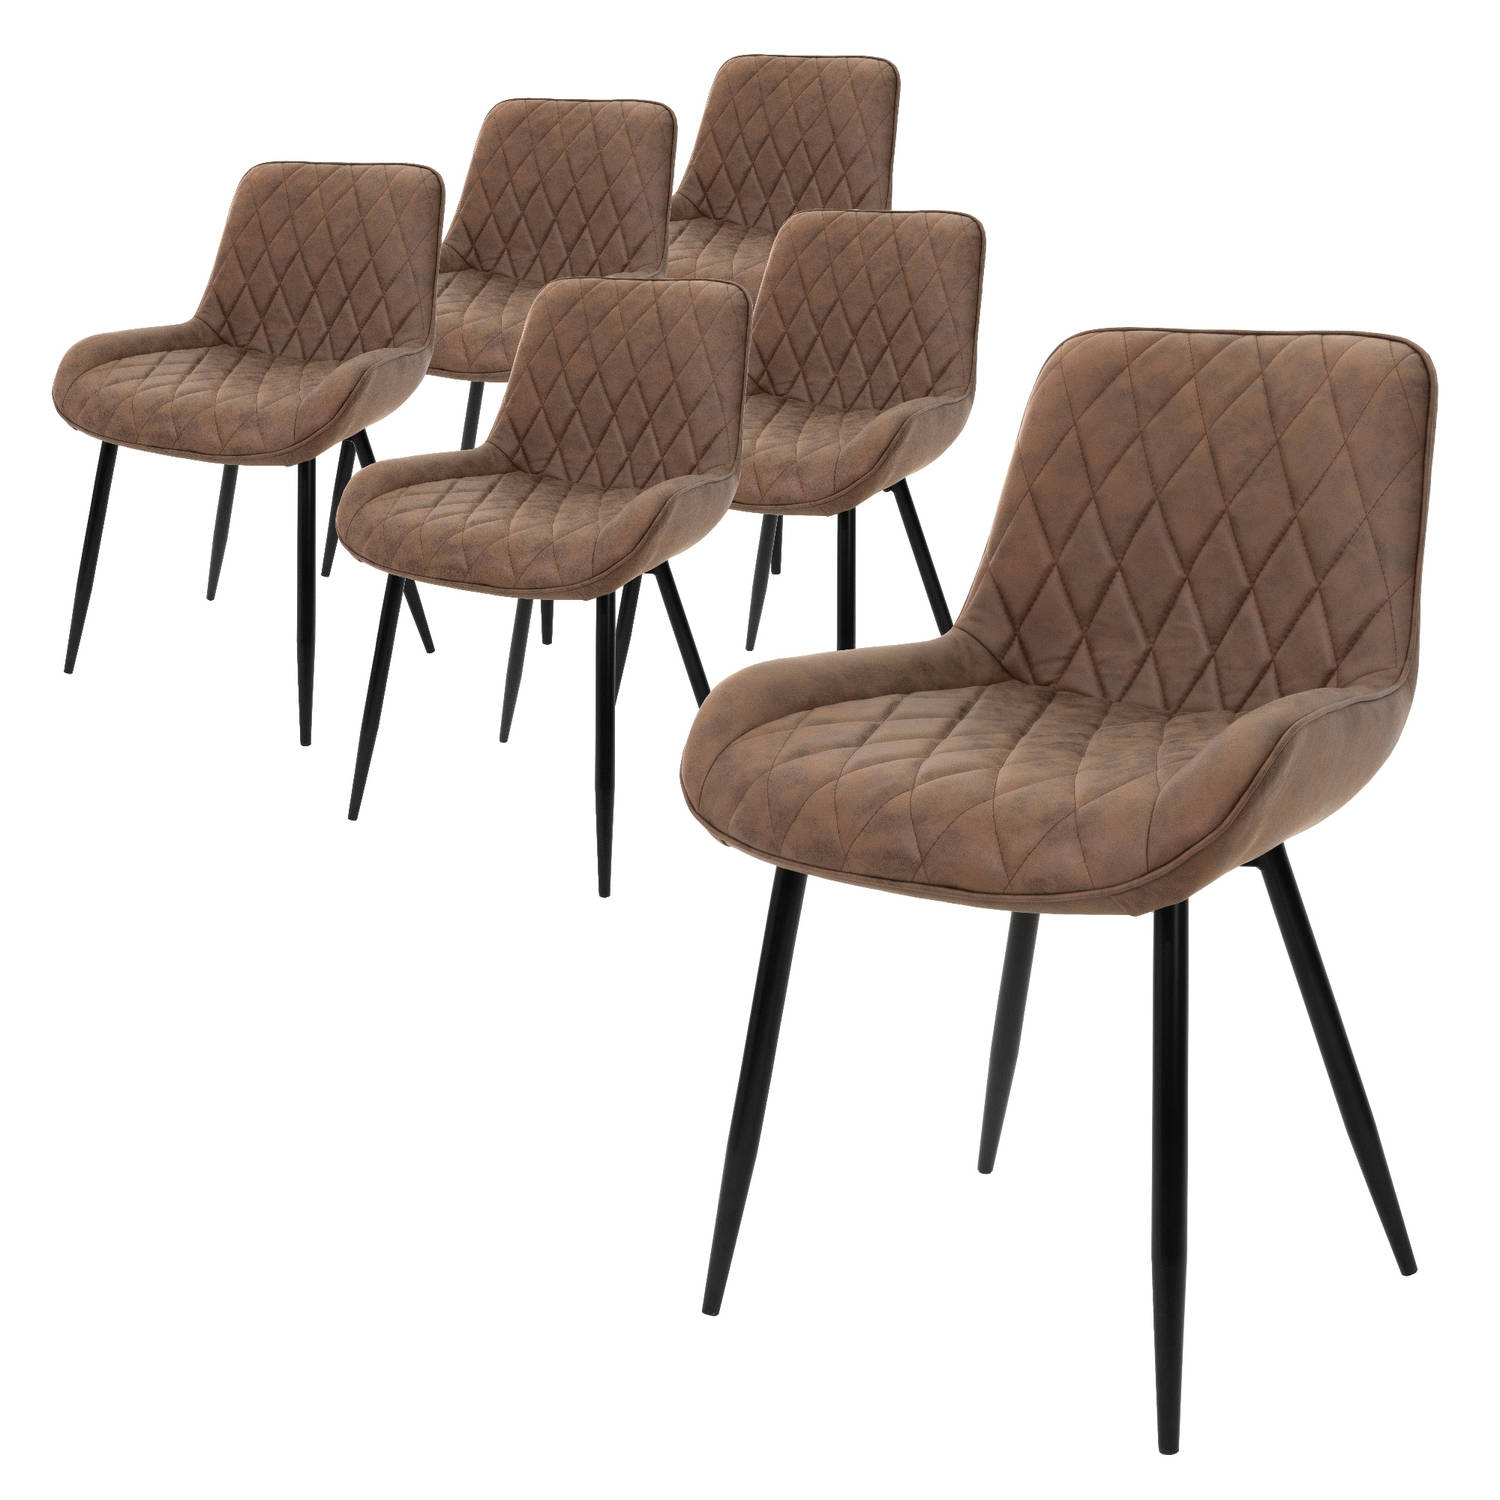 ML-Design Set van 6 Eetkamerstoelen Eetkamerstoel met rugleuning en armleuningen, bruin, PU kunstlederen zitting, metalen poten, keukenstoelen woonkamerstoelen gestoffeerde stoel